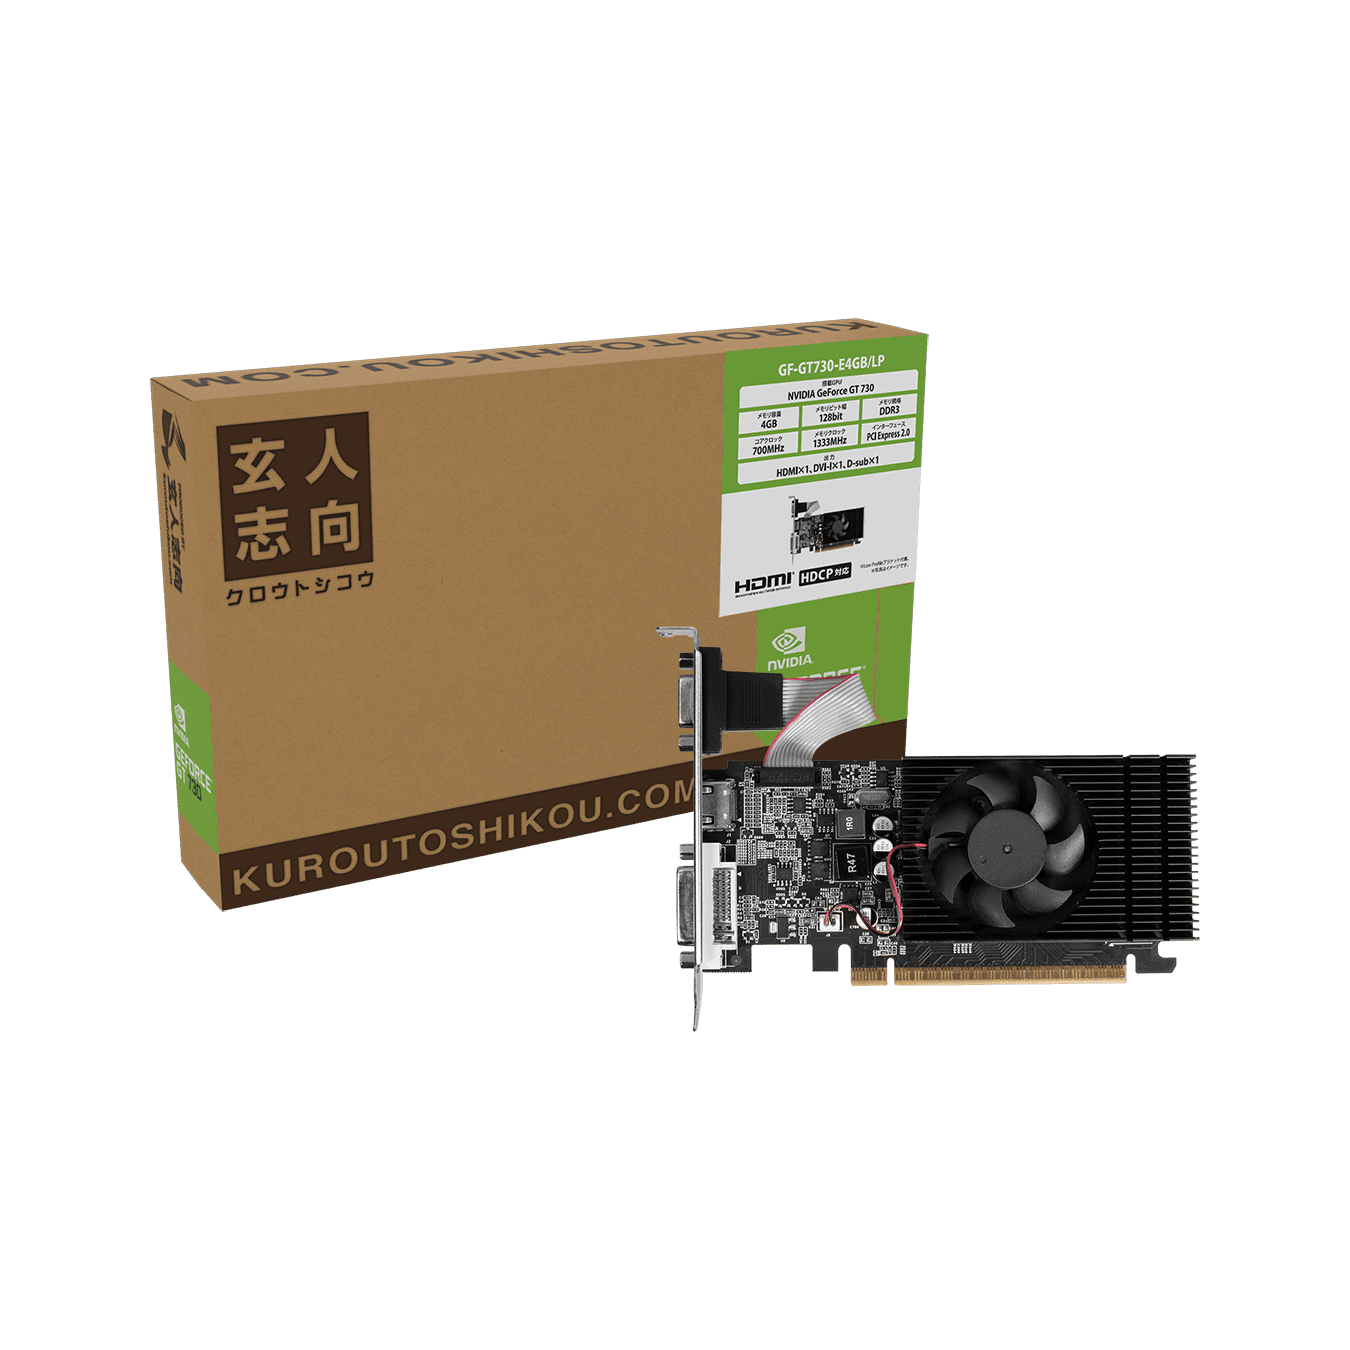 【販売終了】玄人志向 NVIDIA GeForce GT 730 搭載 グラフィックボード (ロープロファイル対応) GF-GT730-E4GB/LP